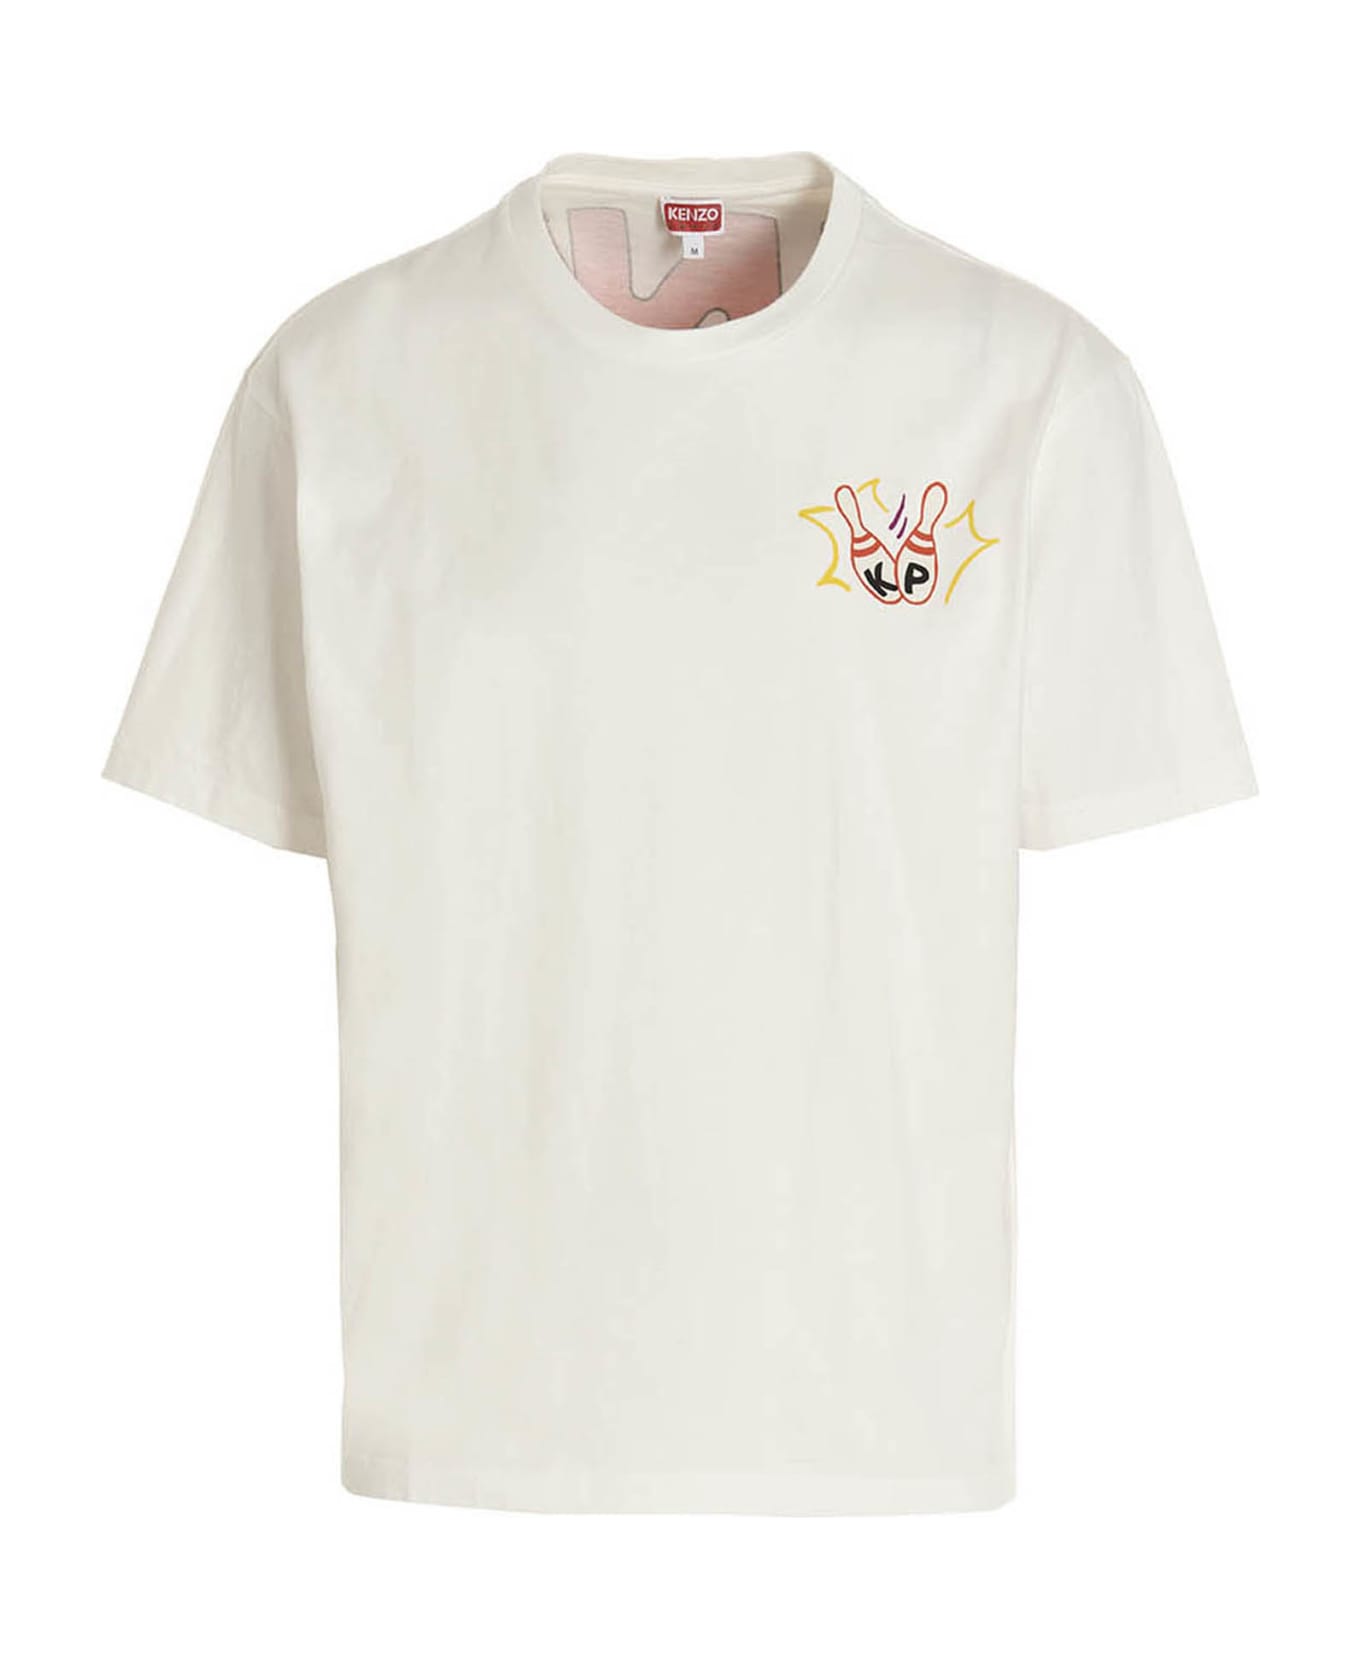 Kenzo Bowling Team T-shirt - WHITE